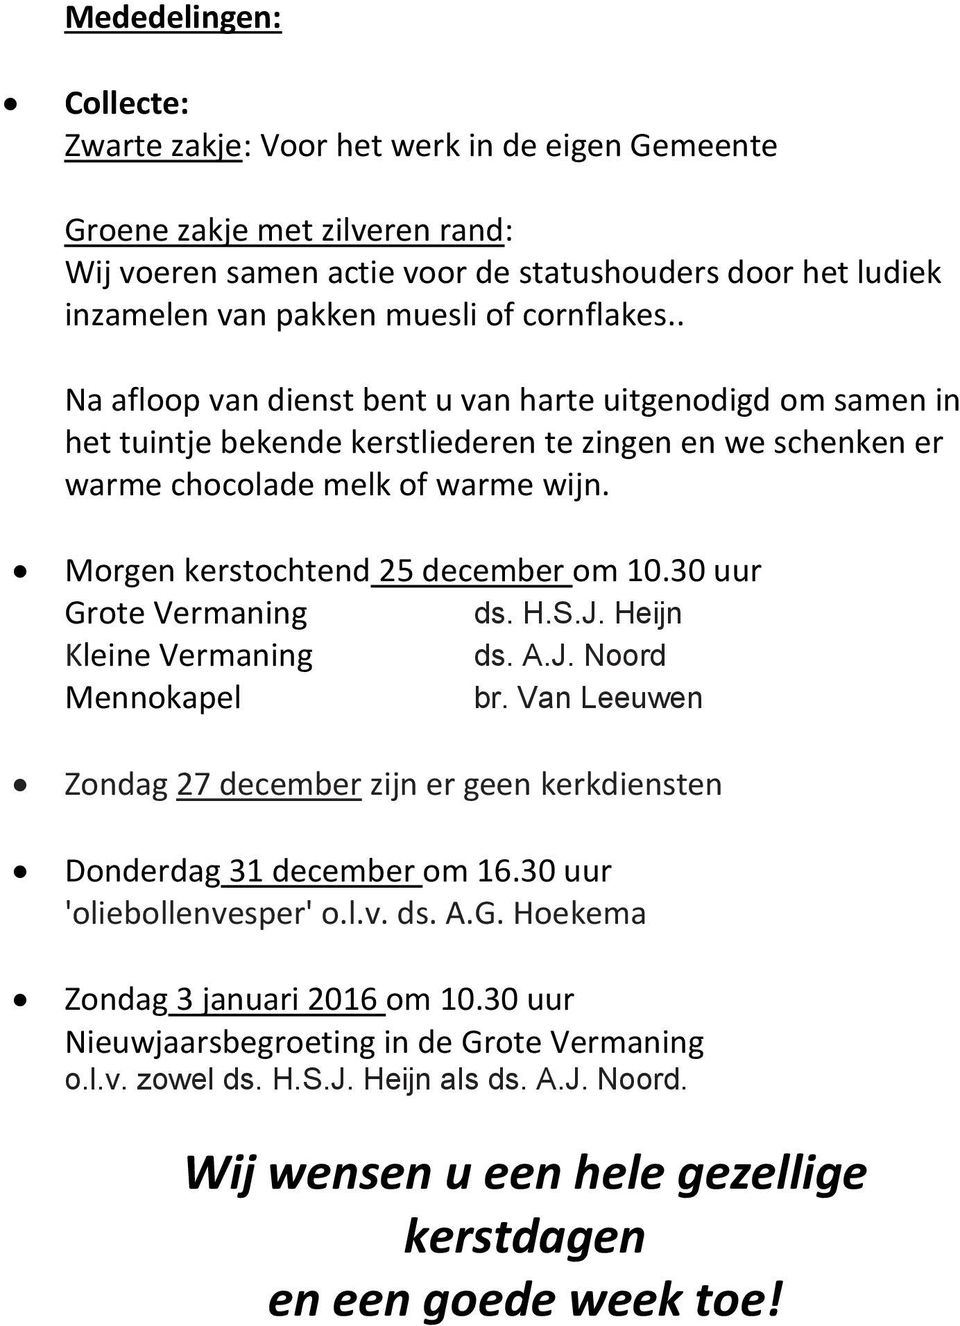 Morgen kerstochtend 25 december om 10.30 uur Grote Vermaning ds. H.S.J. Heijn Kleine Vermaning ds. A.J. Noord Mennokapel br.